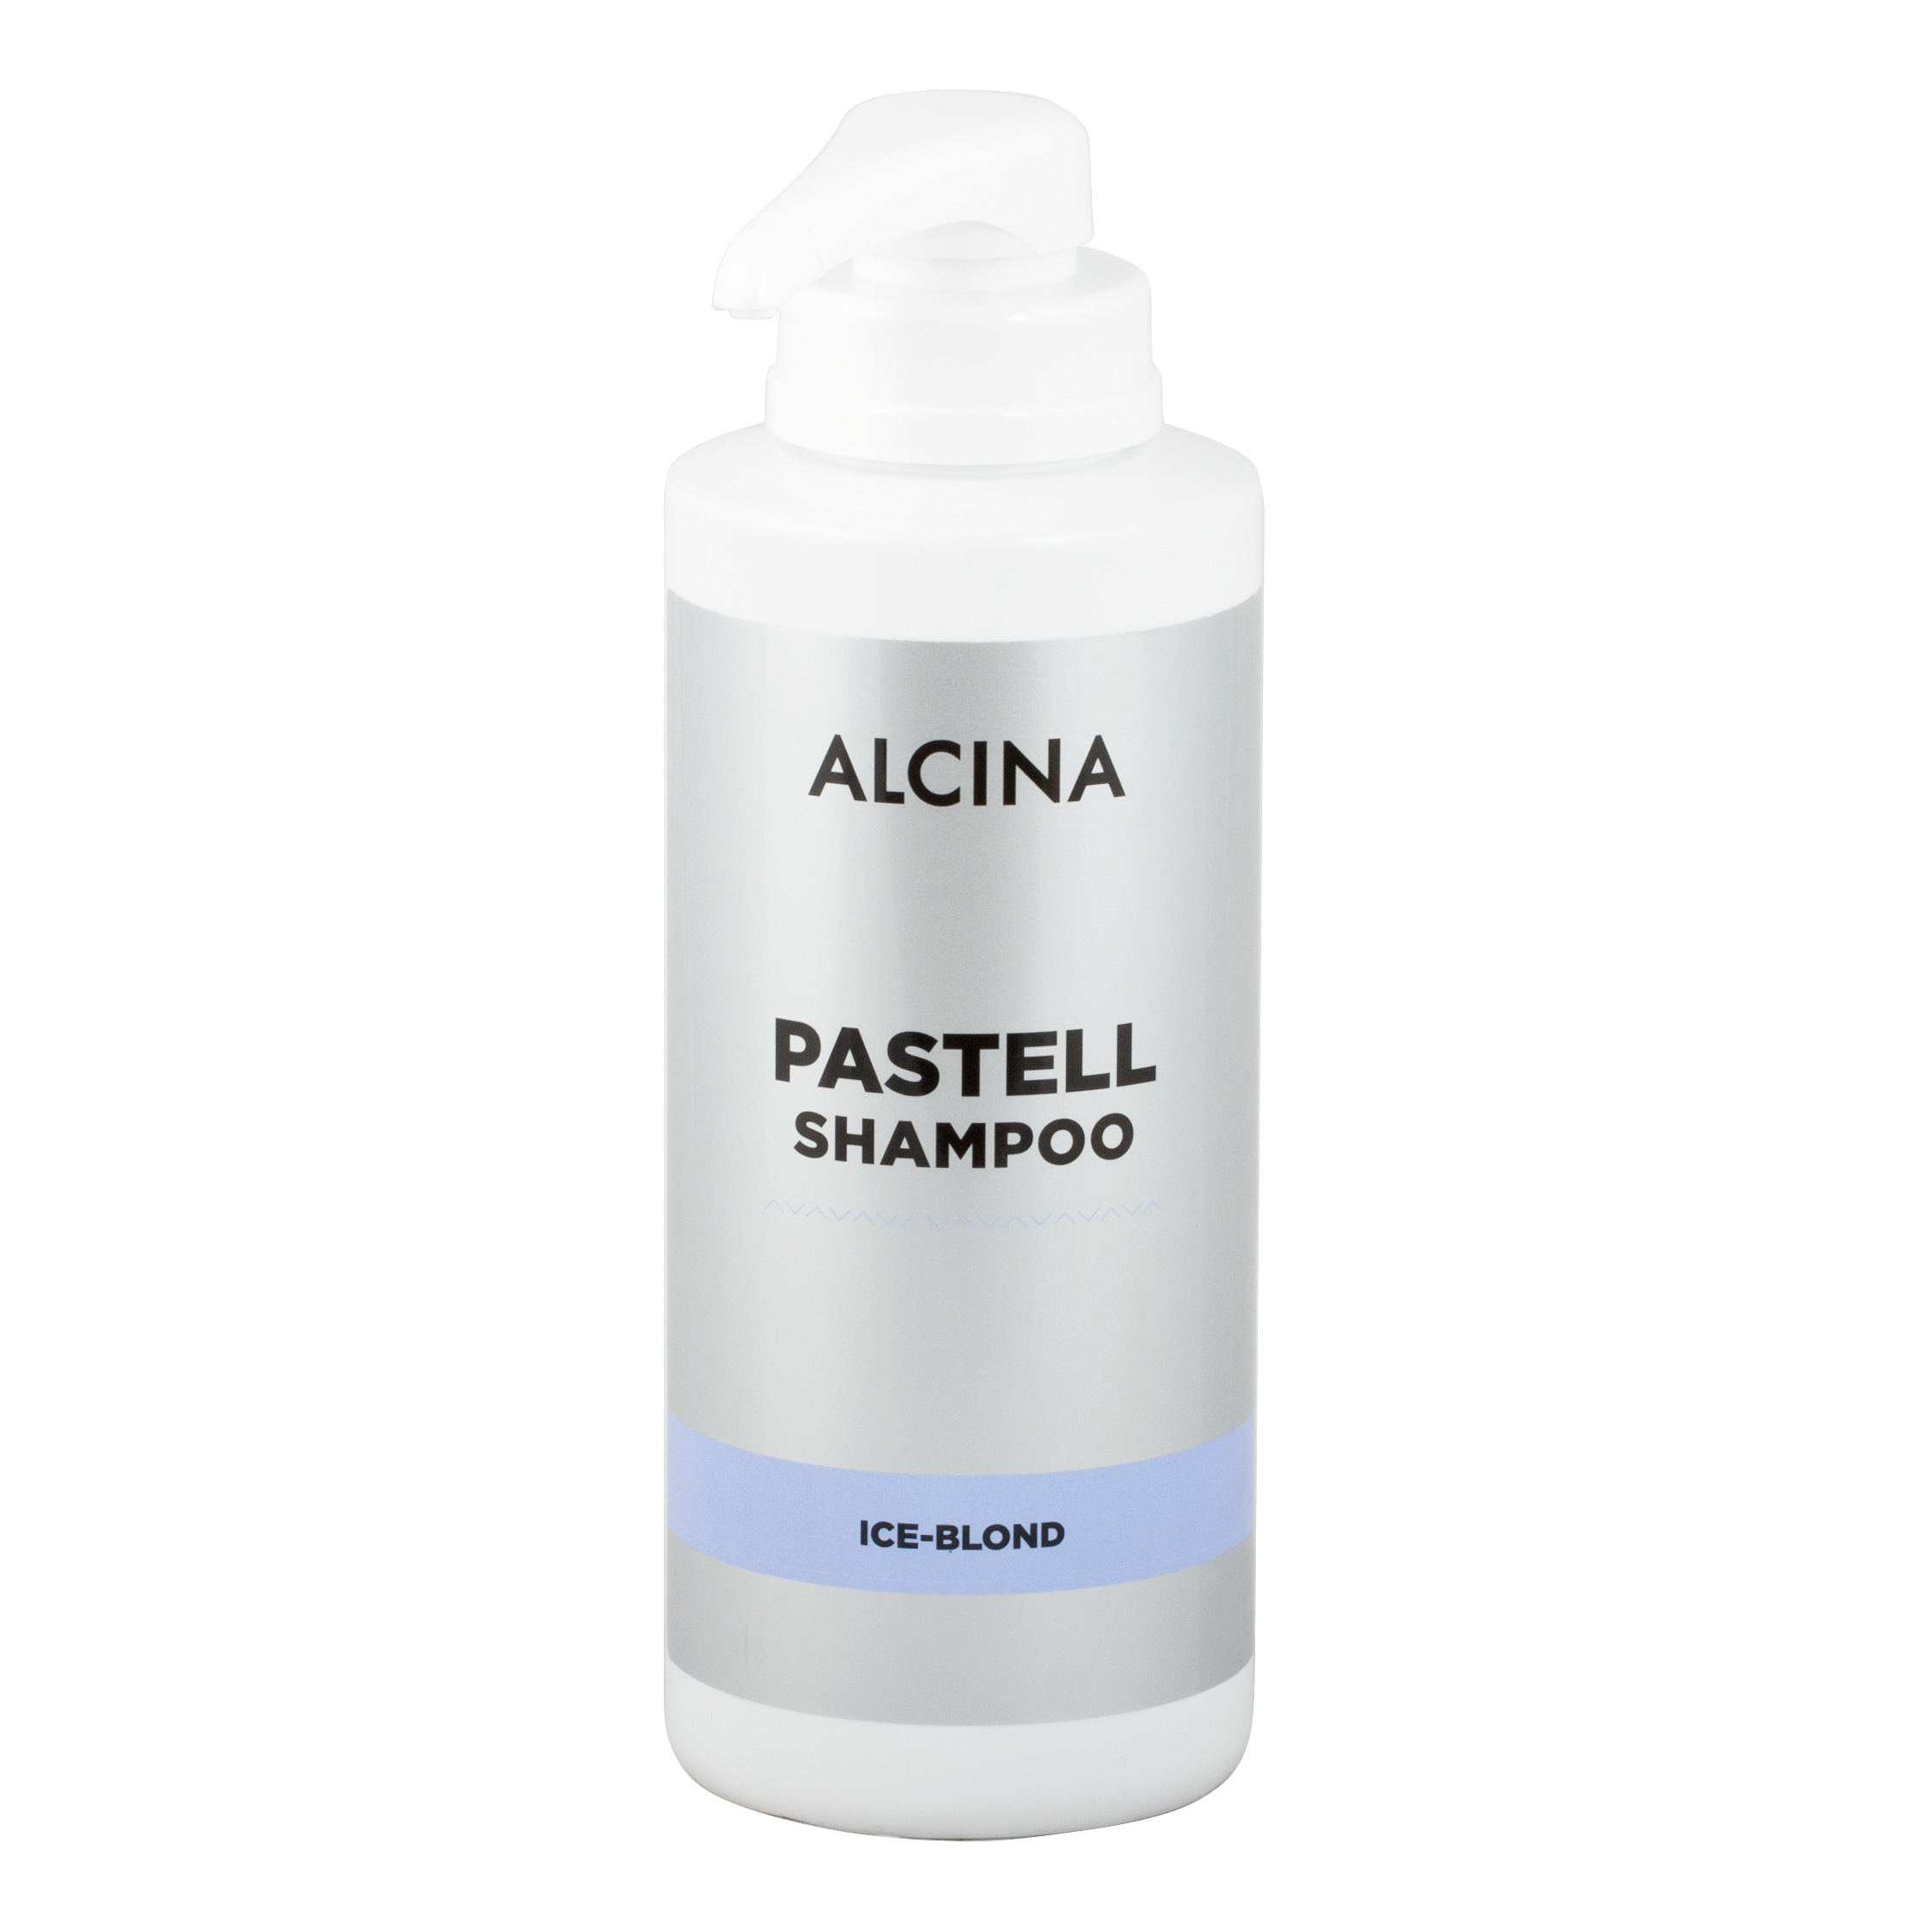 Alcina Pastell šampon Ice-Blond - kabinetní balení